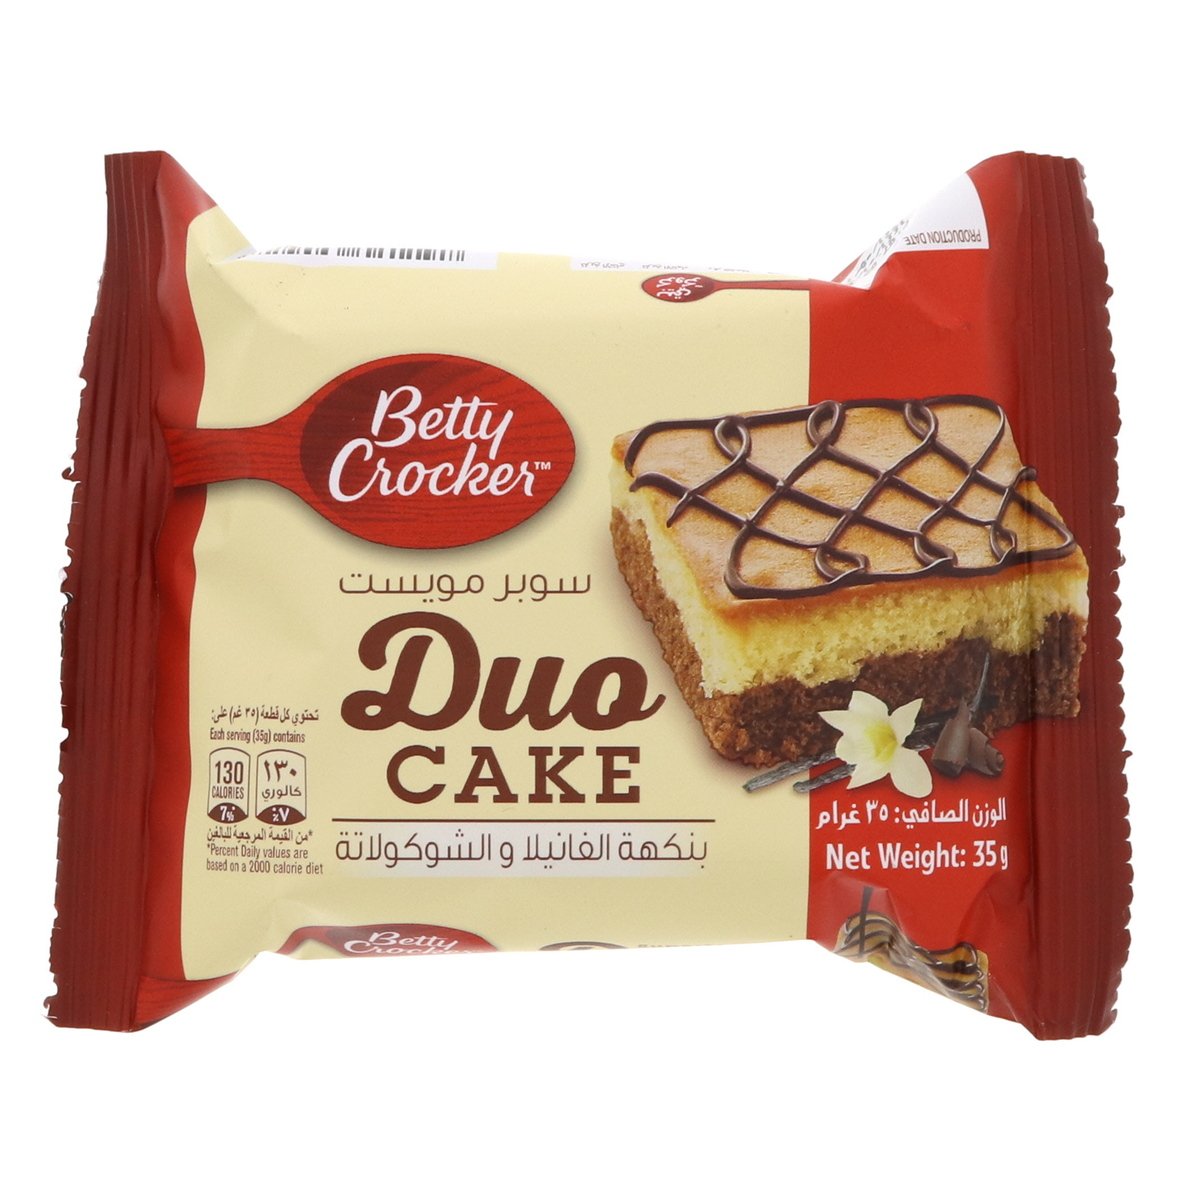 Betty Crocker Duo Cake Chocolate & Vanilla 35 g